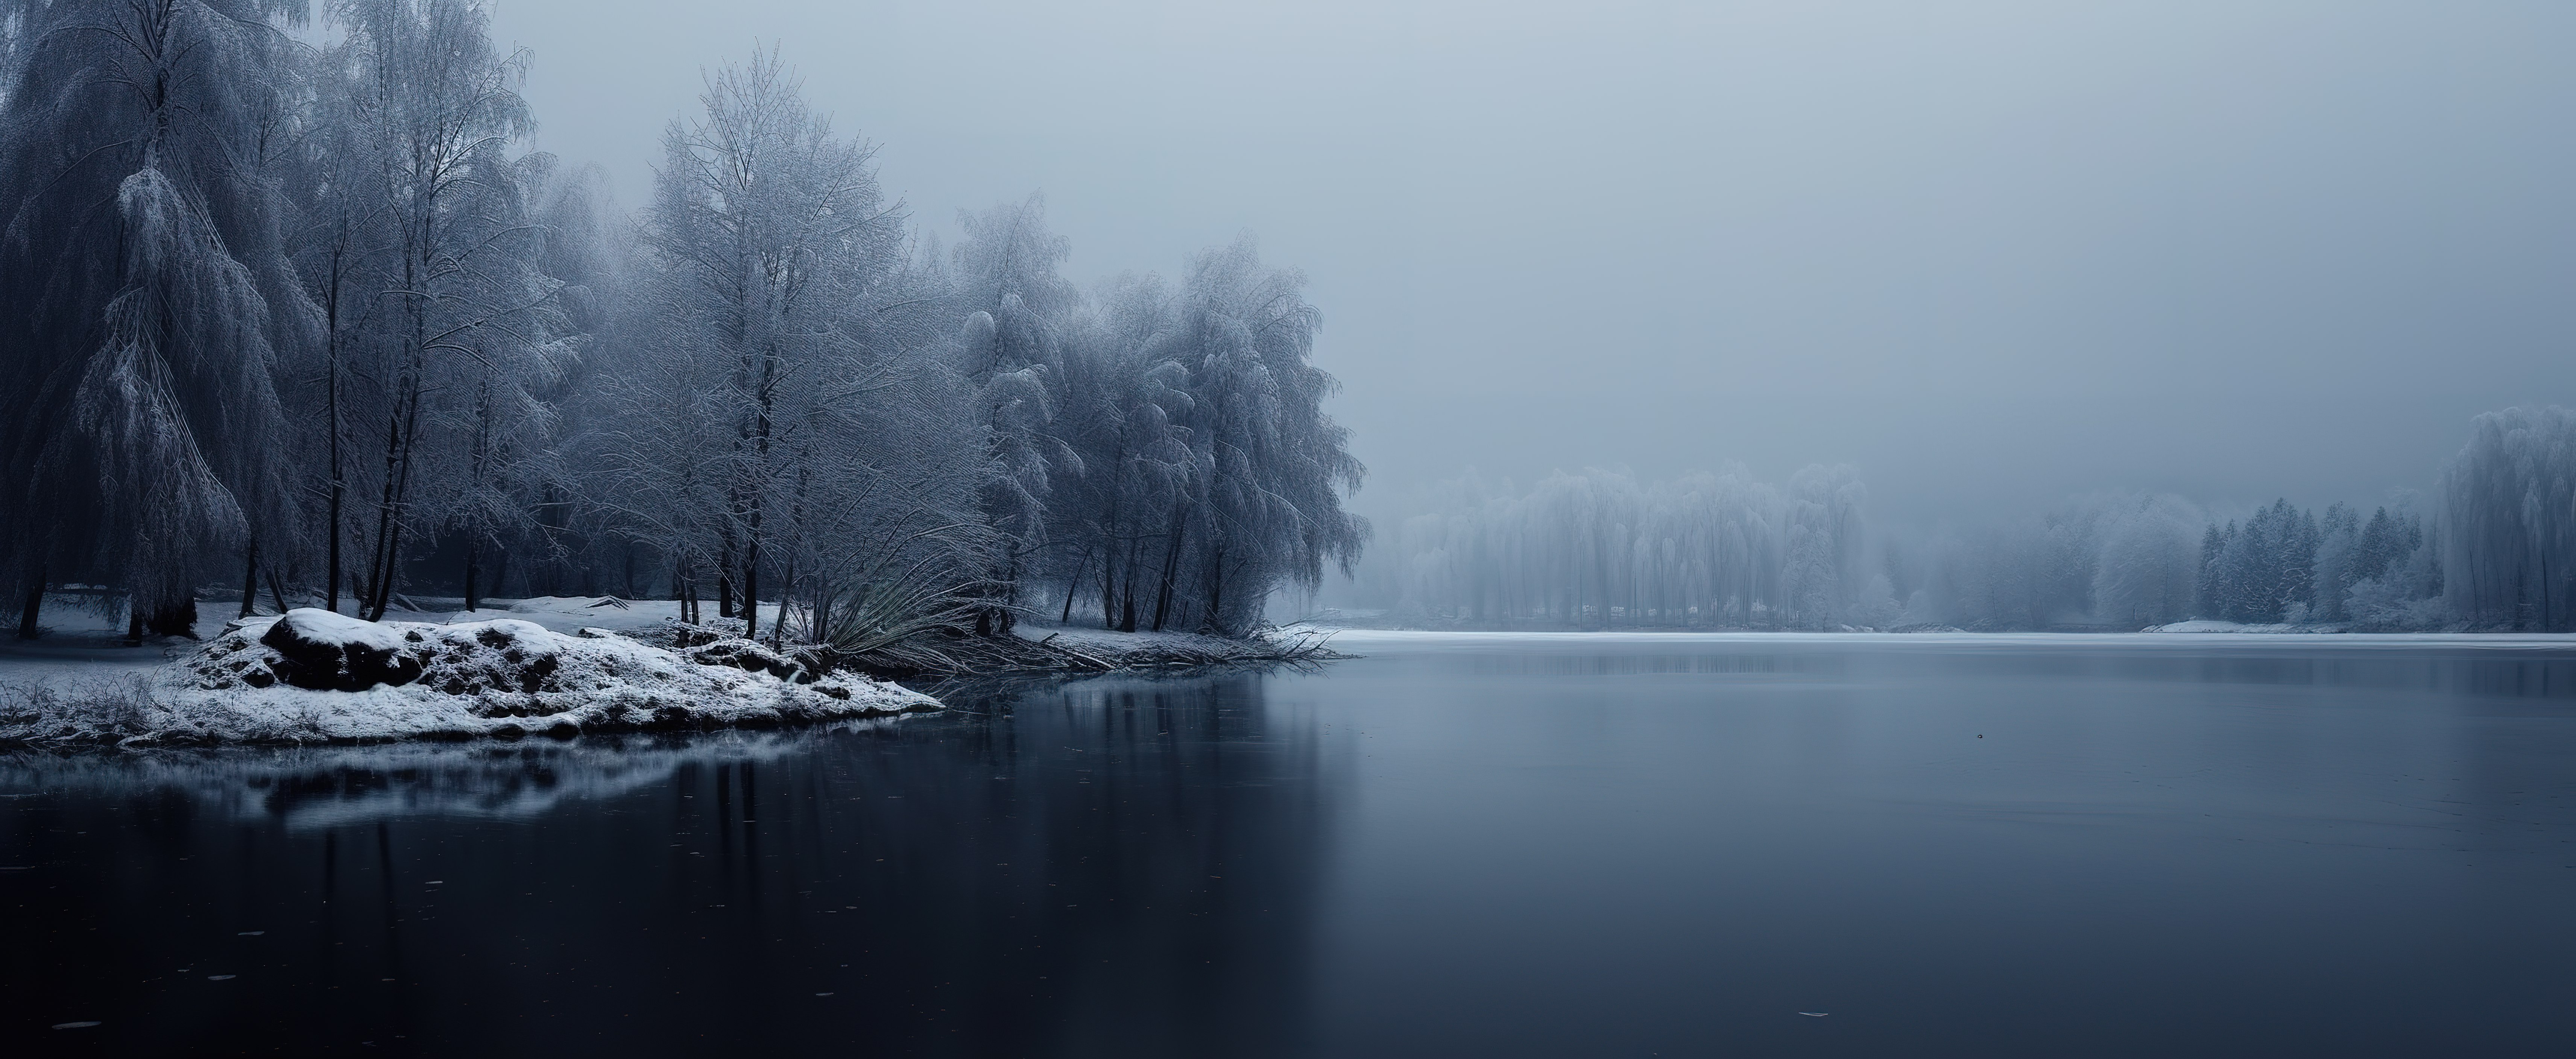 黑暗中雪覆盖了树木和湖泊图片